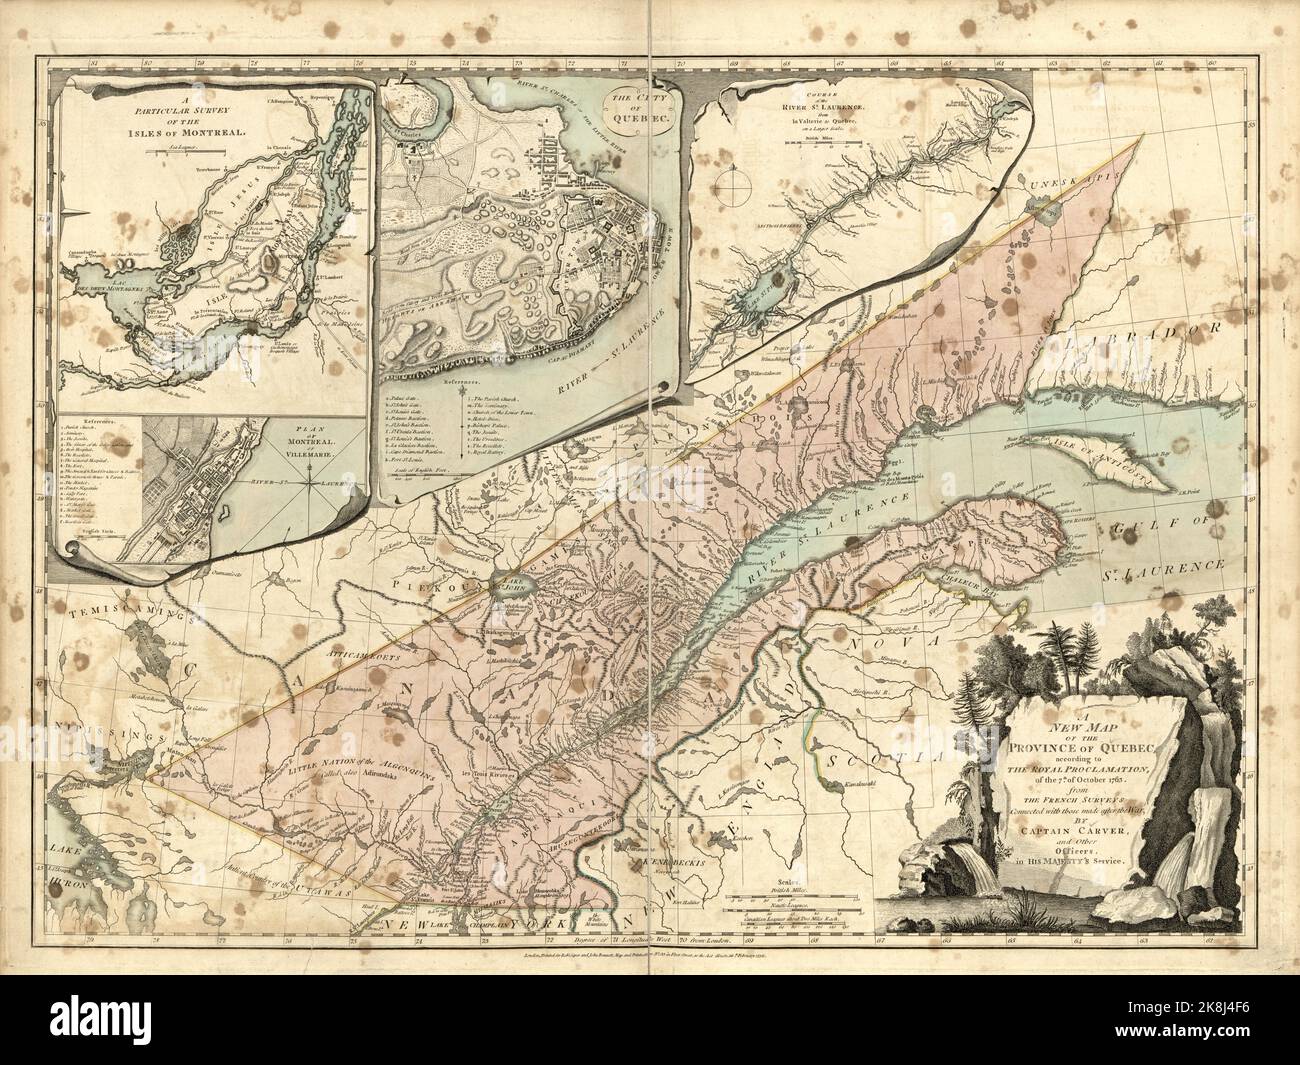 Una mappa vintage della Provincia del Québec, Canada, secondo la proclamazione reale del 7th del October1763 che seguì il Trattato di Parigi. Le inset mostrano l'isola di Montreal e Quebec City. Foto Stock